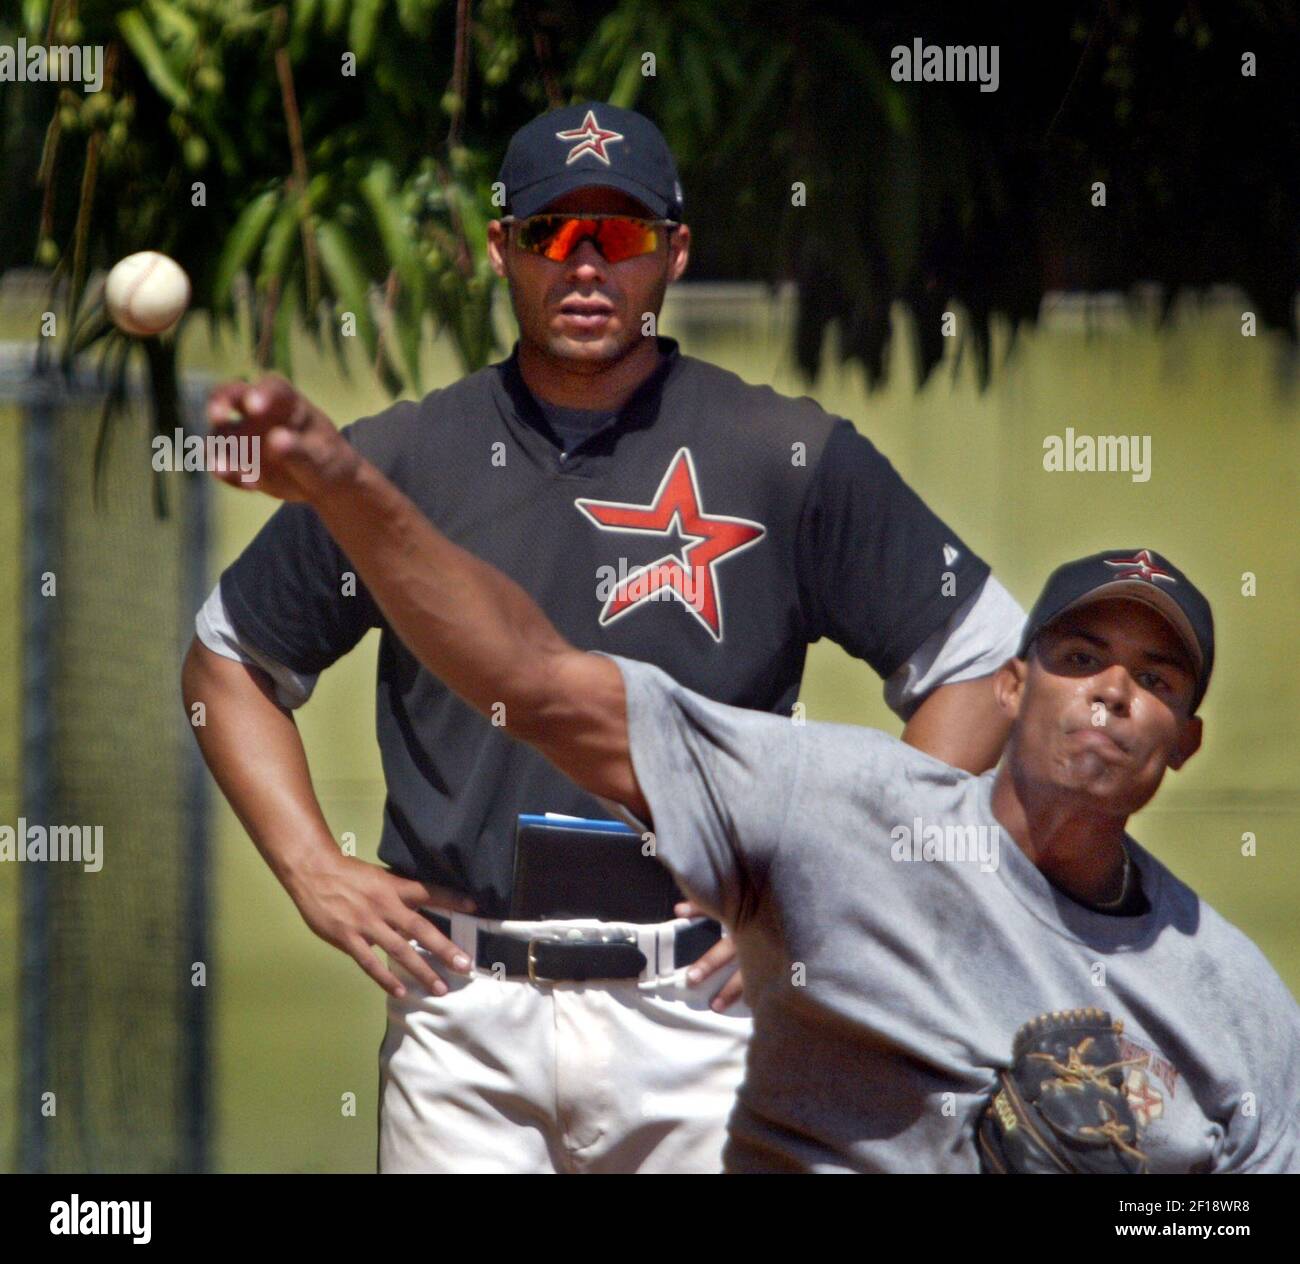 KRT SPORT STORIA SBATTERE: BBO-VENEZUELA KRT FOTOGRAFIA DI PATRICK FARRELL/MIAMI HERALD (SOUTH FLORIDA SUN-SENTINEL OUT) (Febbraio 18) (ORLANDO OUT) UNA giovane prospettiva di baseball lavora alla Houston Astros Baseball Academy a Valencia, Venezuela, come mostra l'allenatore di pitching Oscar Padron. (Foto di cdm) 2005 (diversità) Foto Stock